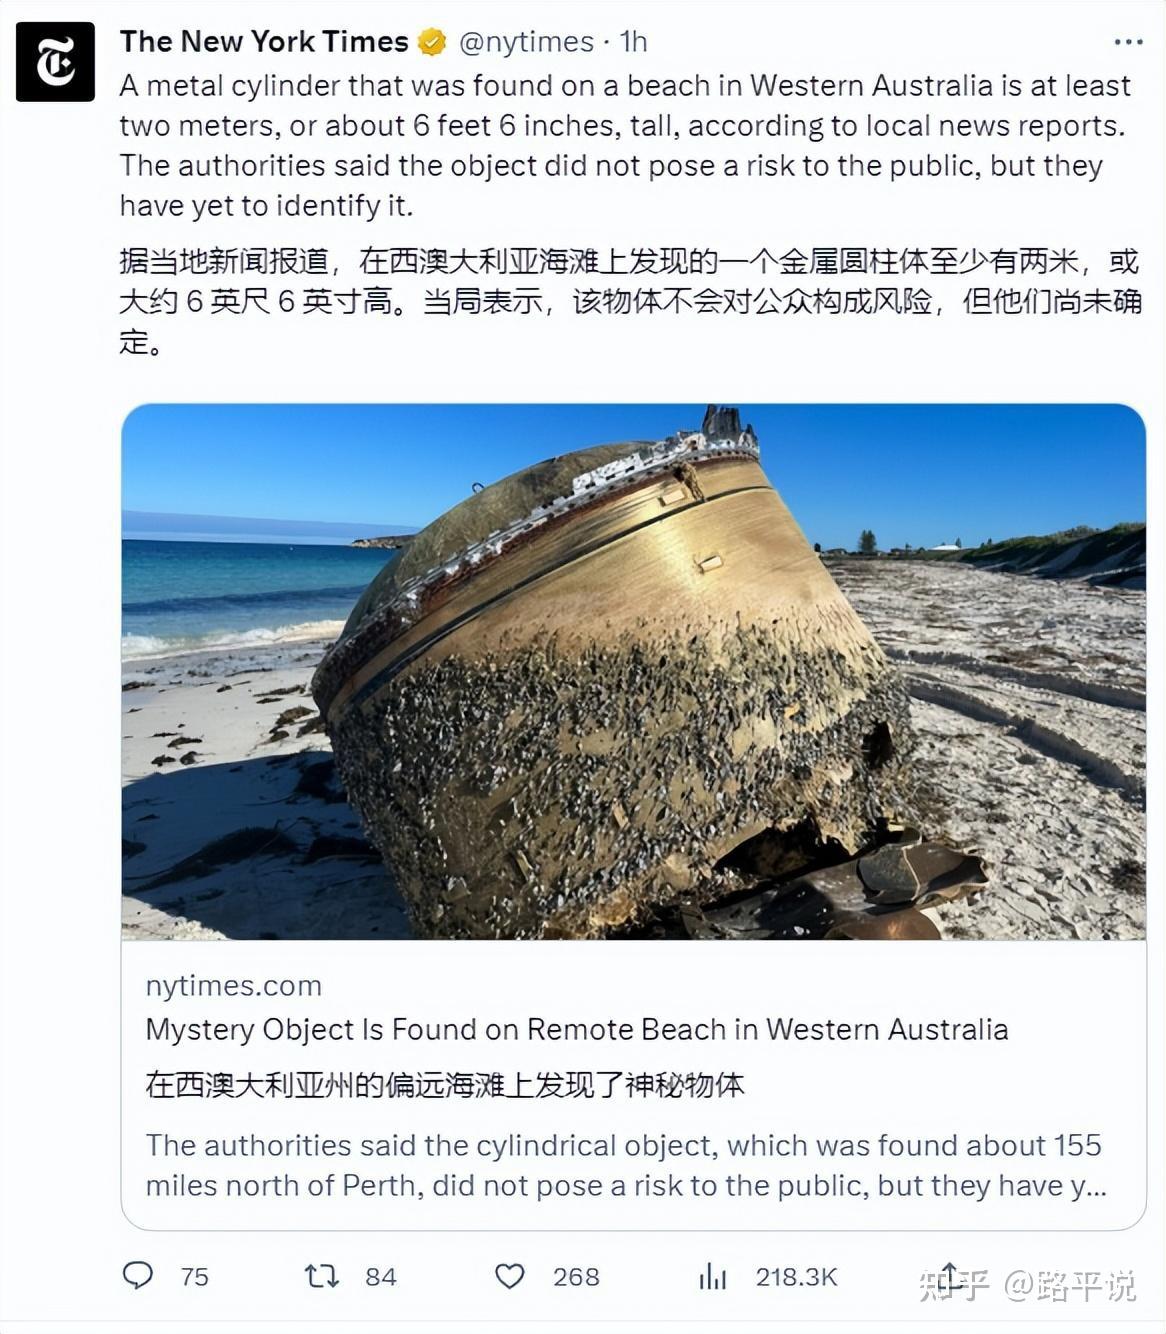 疑似印度火箭残骸落到澳大利亚海滩,不是登月火箭,砸到人咋办?